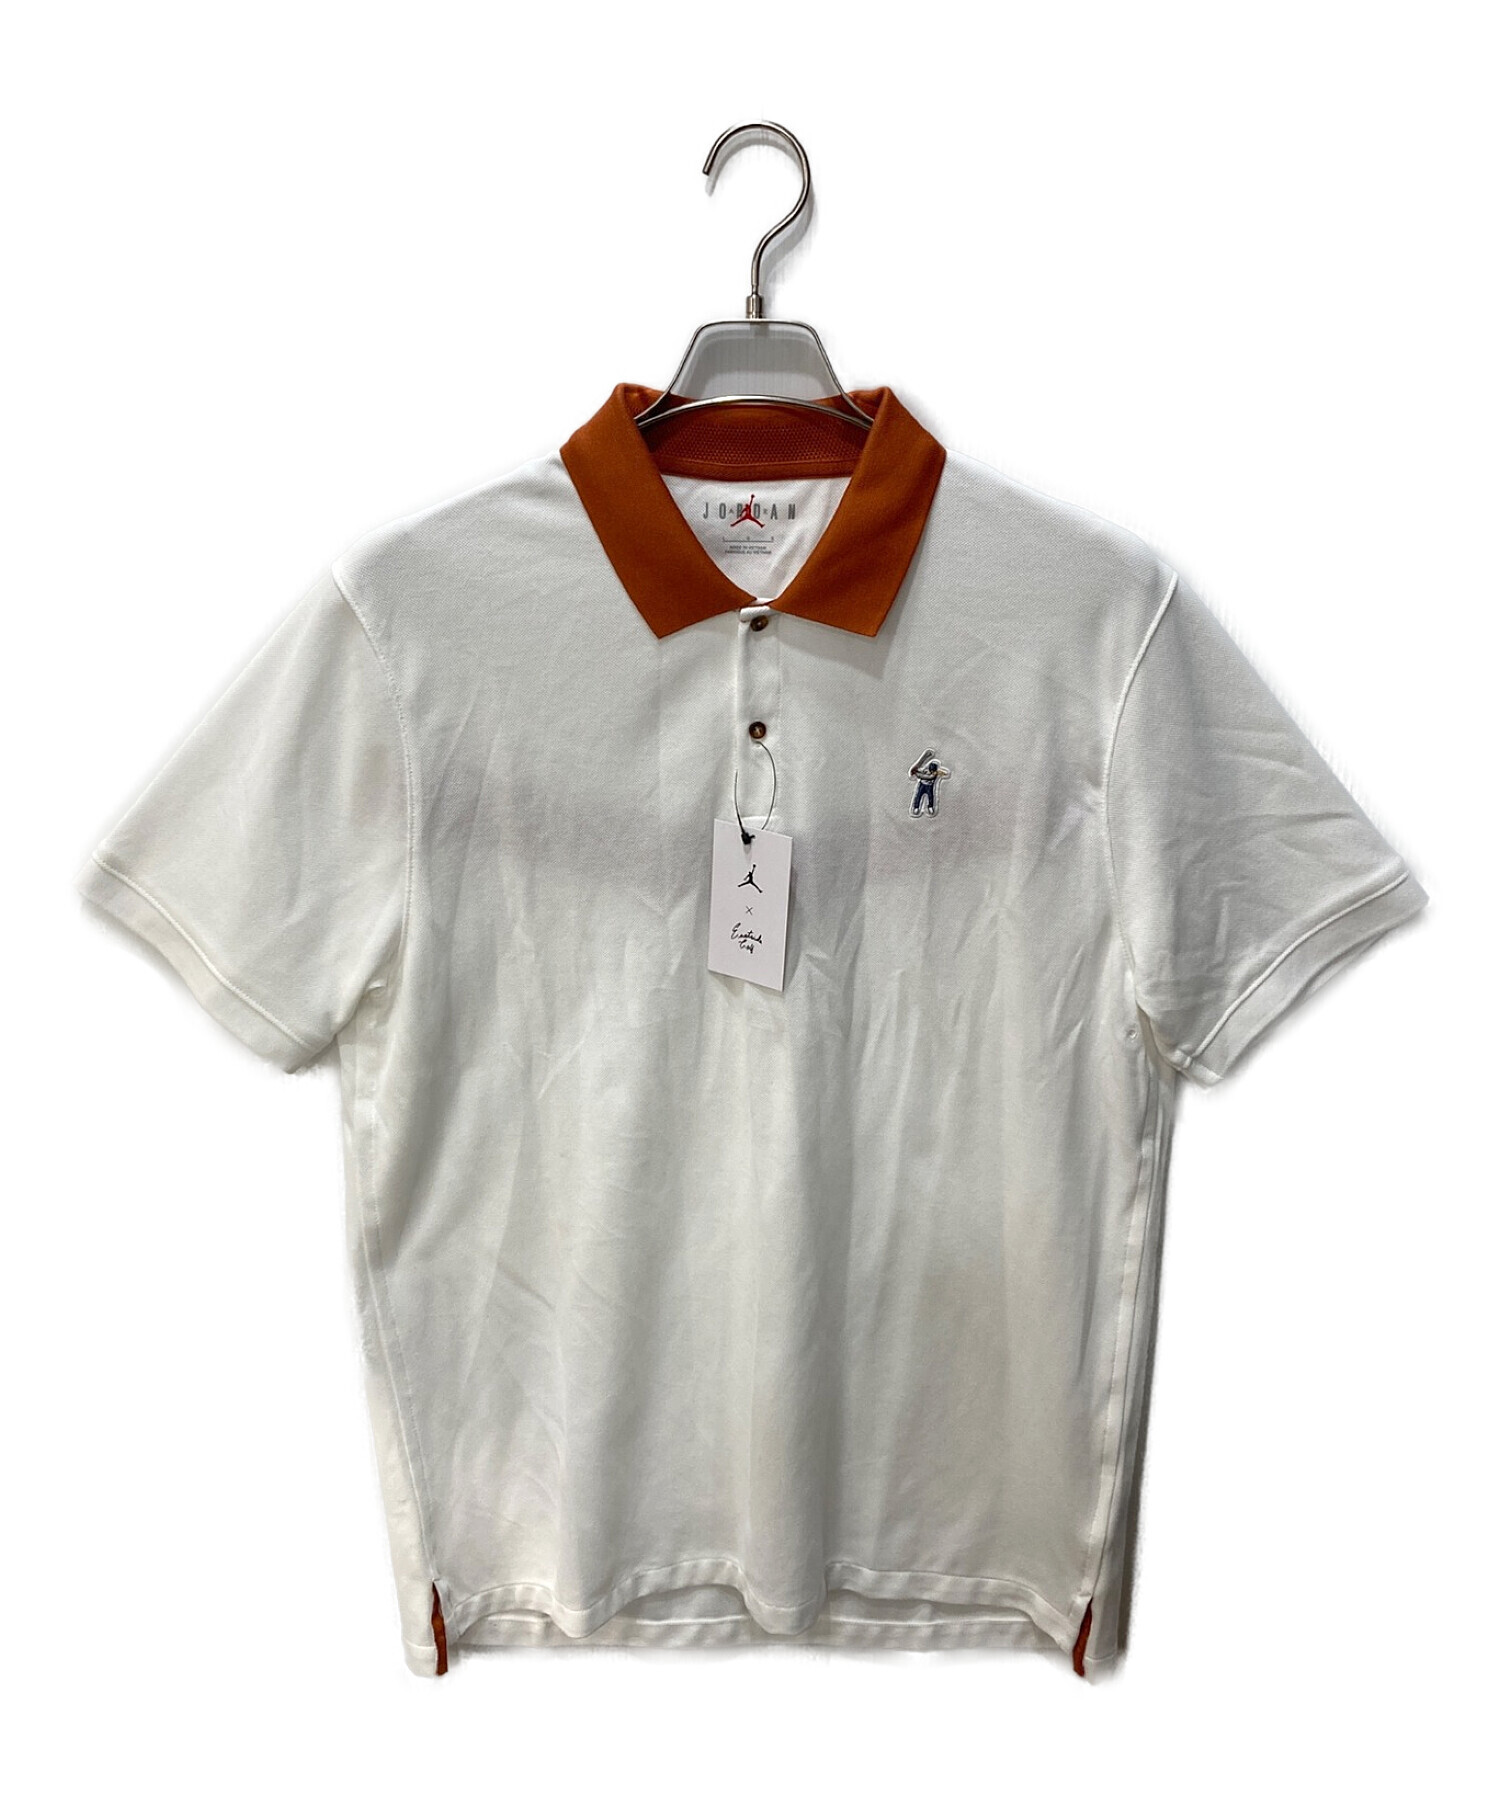 ジョーダン ポロシャツ 新品価格9680 - ポロシャツ